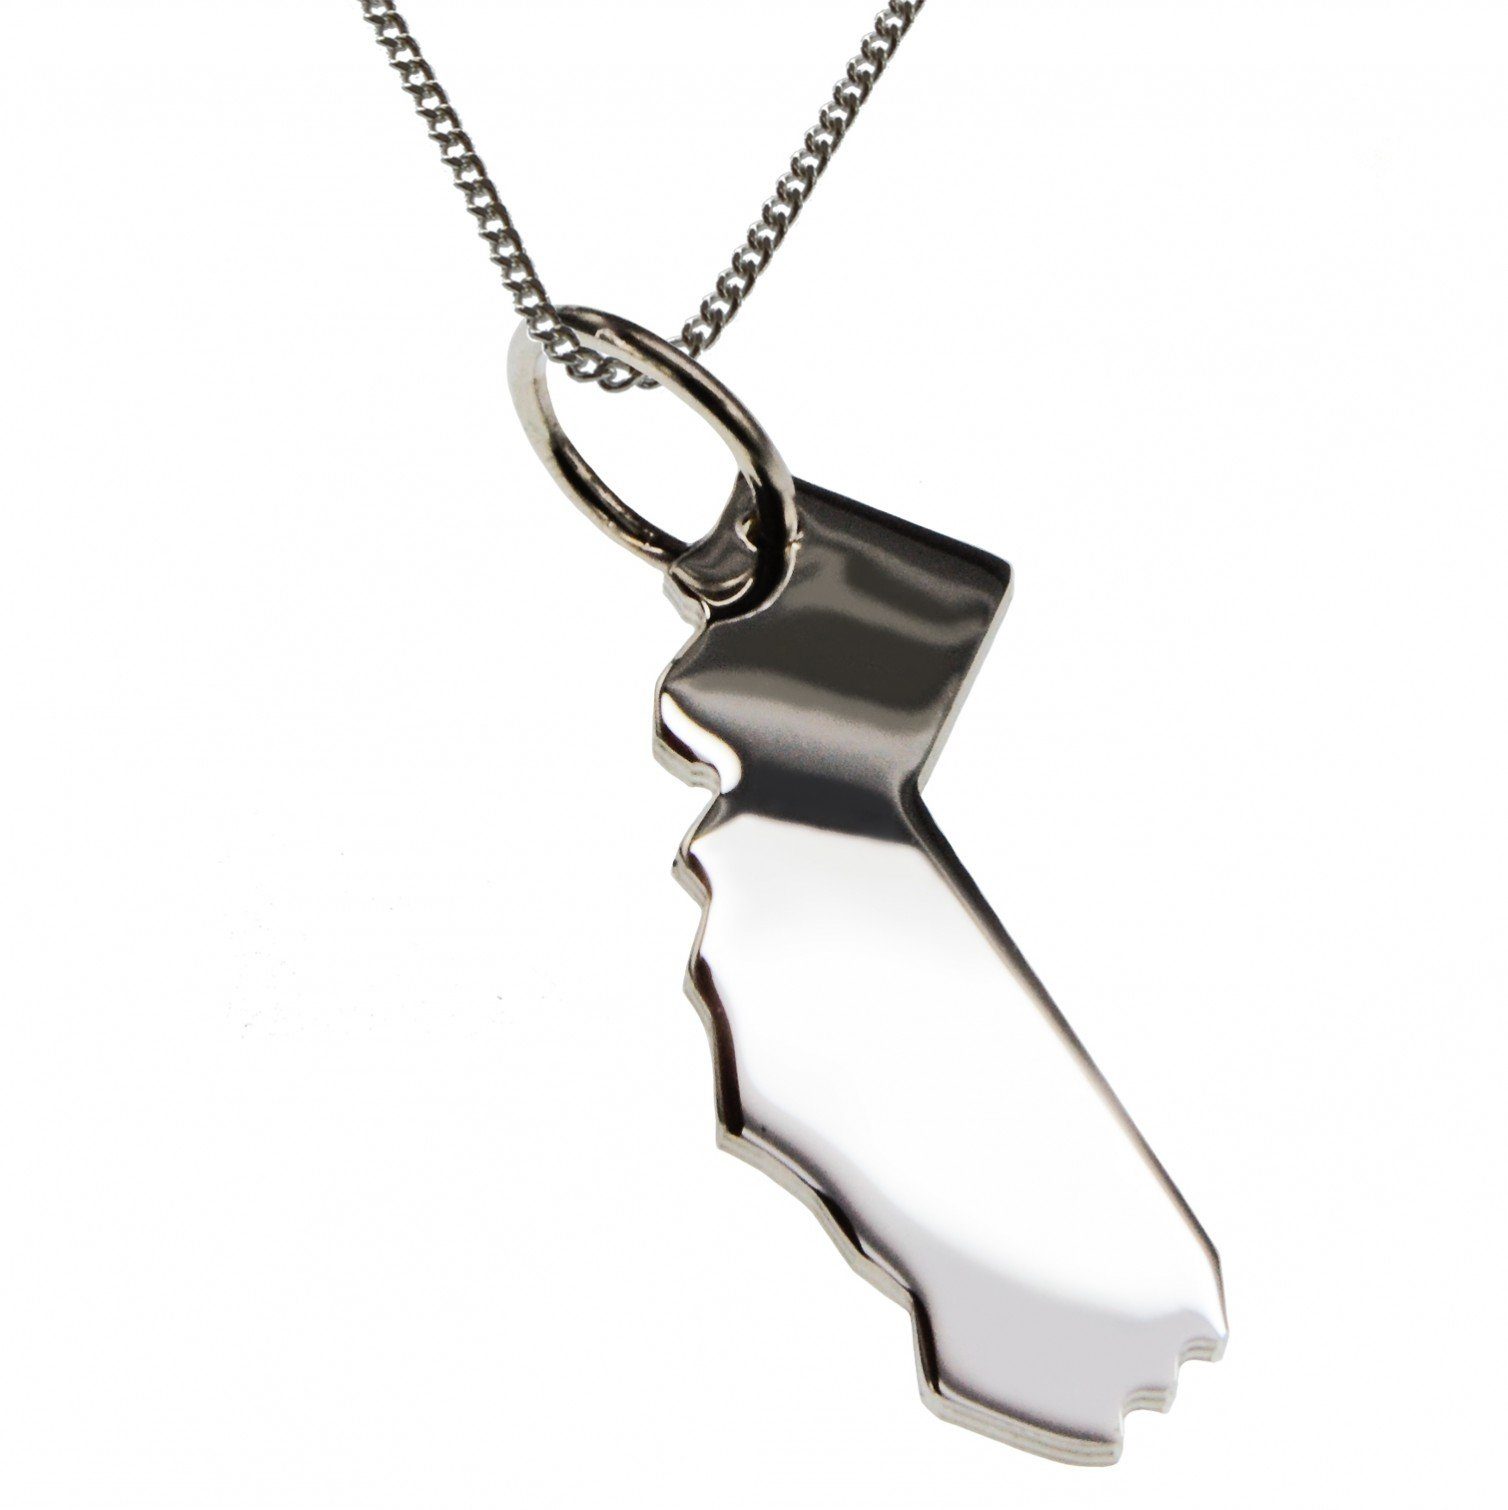 schmuckador Kette mit Anhänger »50cm Halskette + Kalifornien Anhänger in  massiv 925 Silber« online kaufen | OTTO